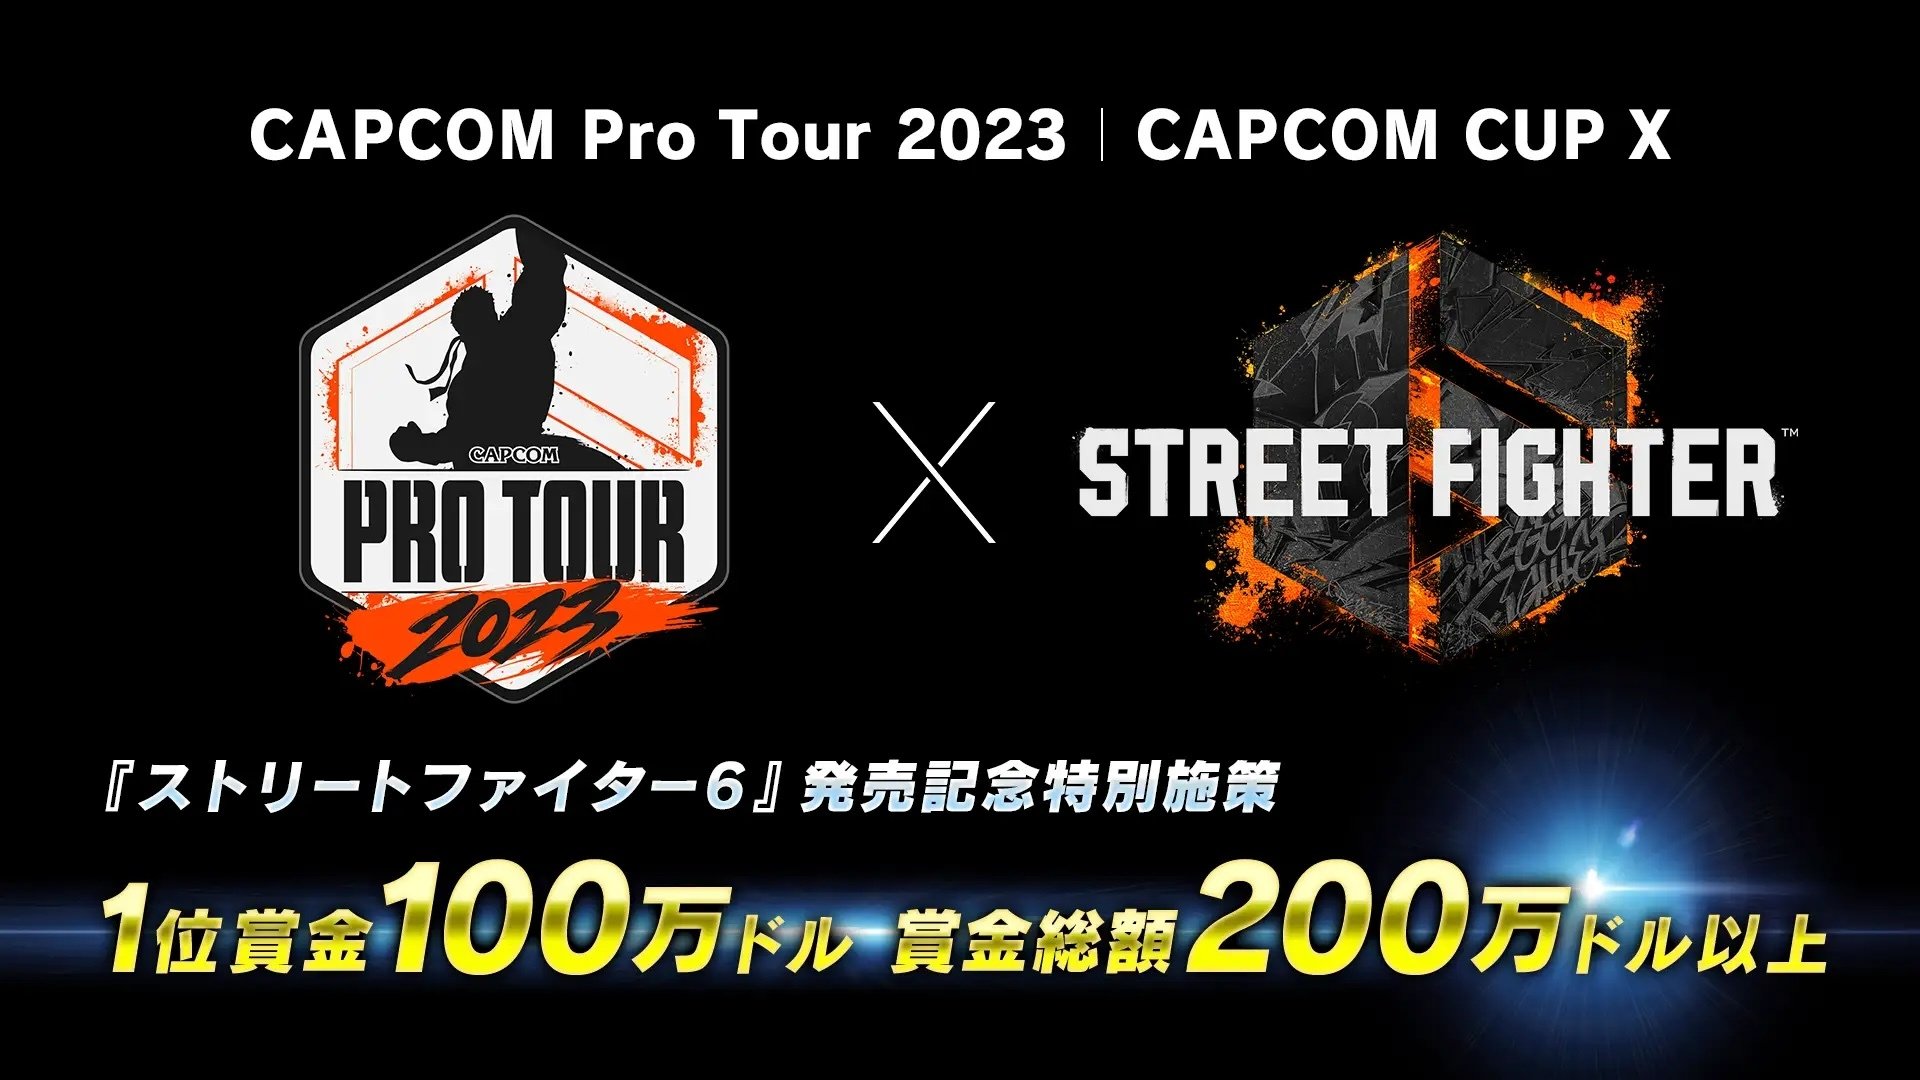  "CAPCOM Pro Tour 2023"開催決定